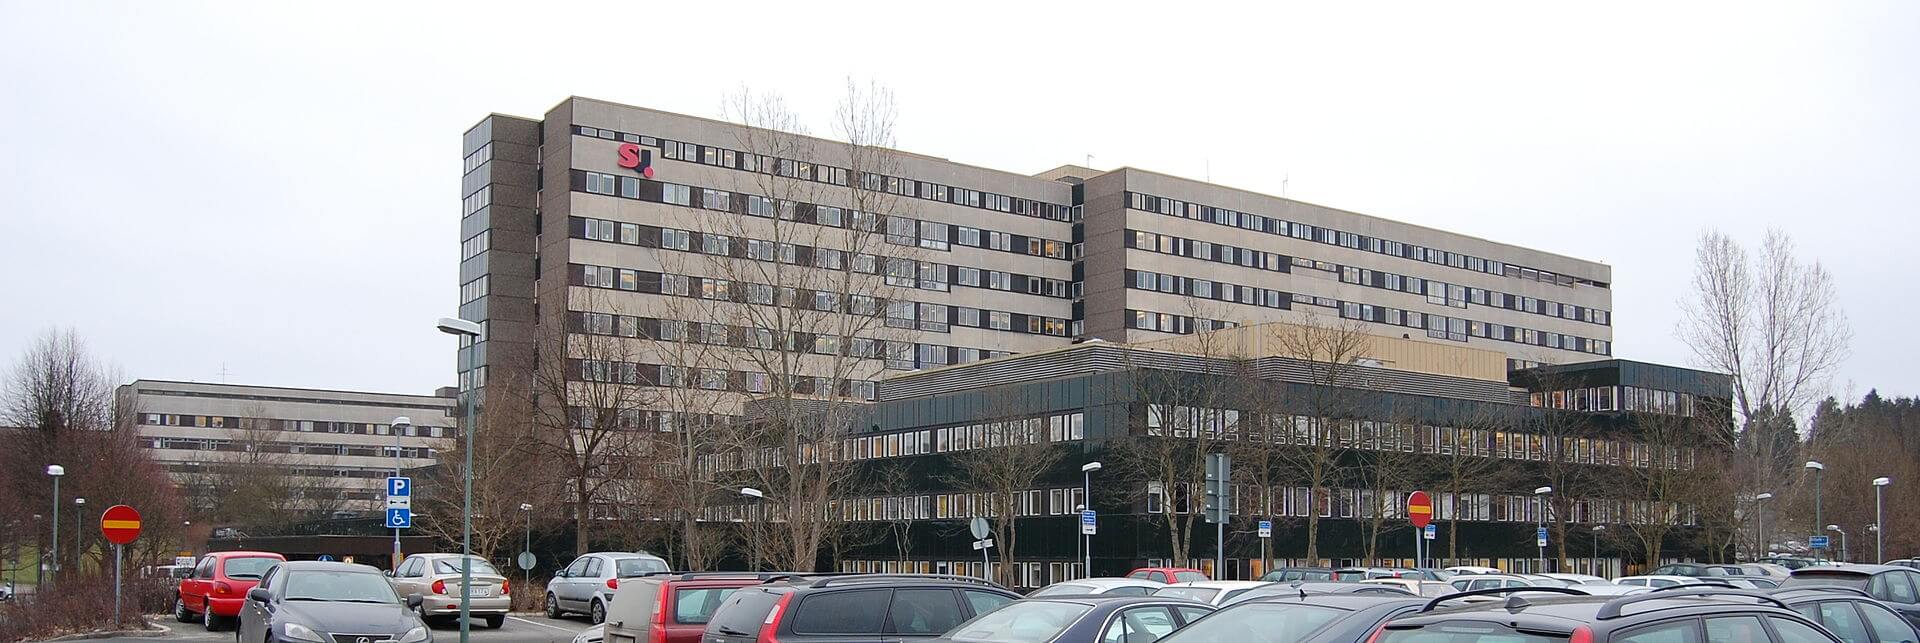 östra sjukhuset